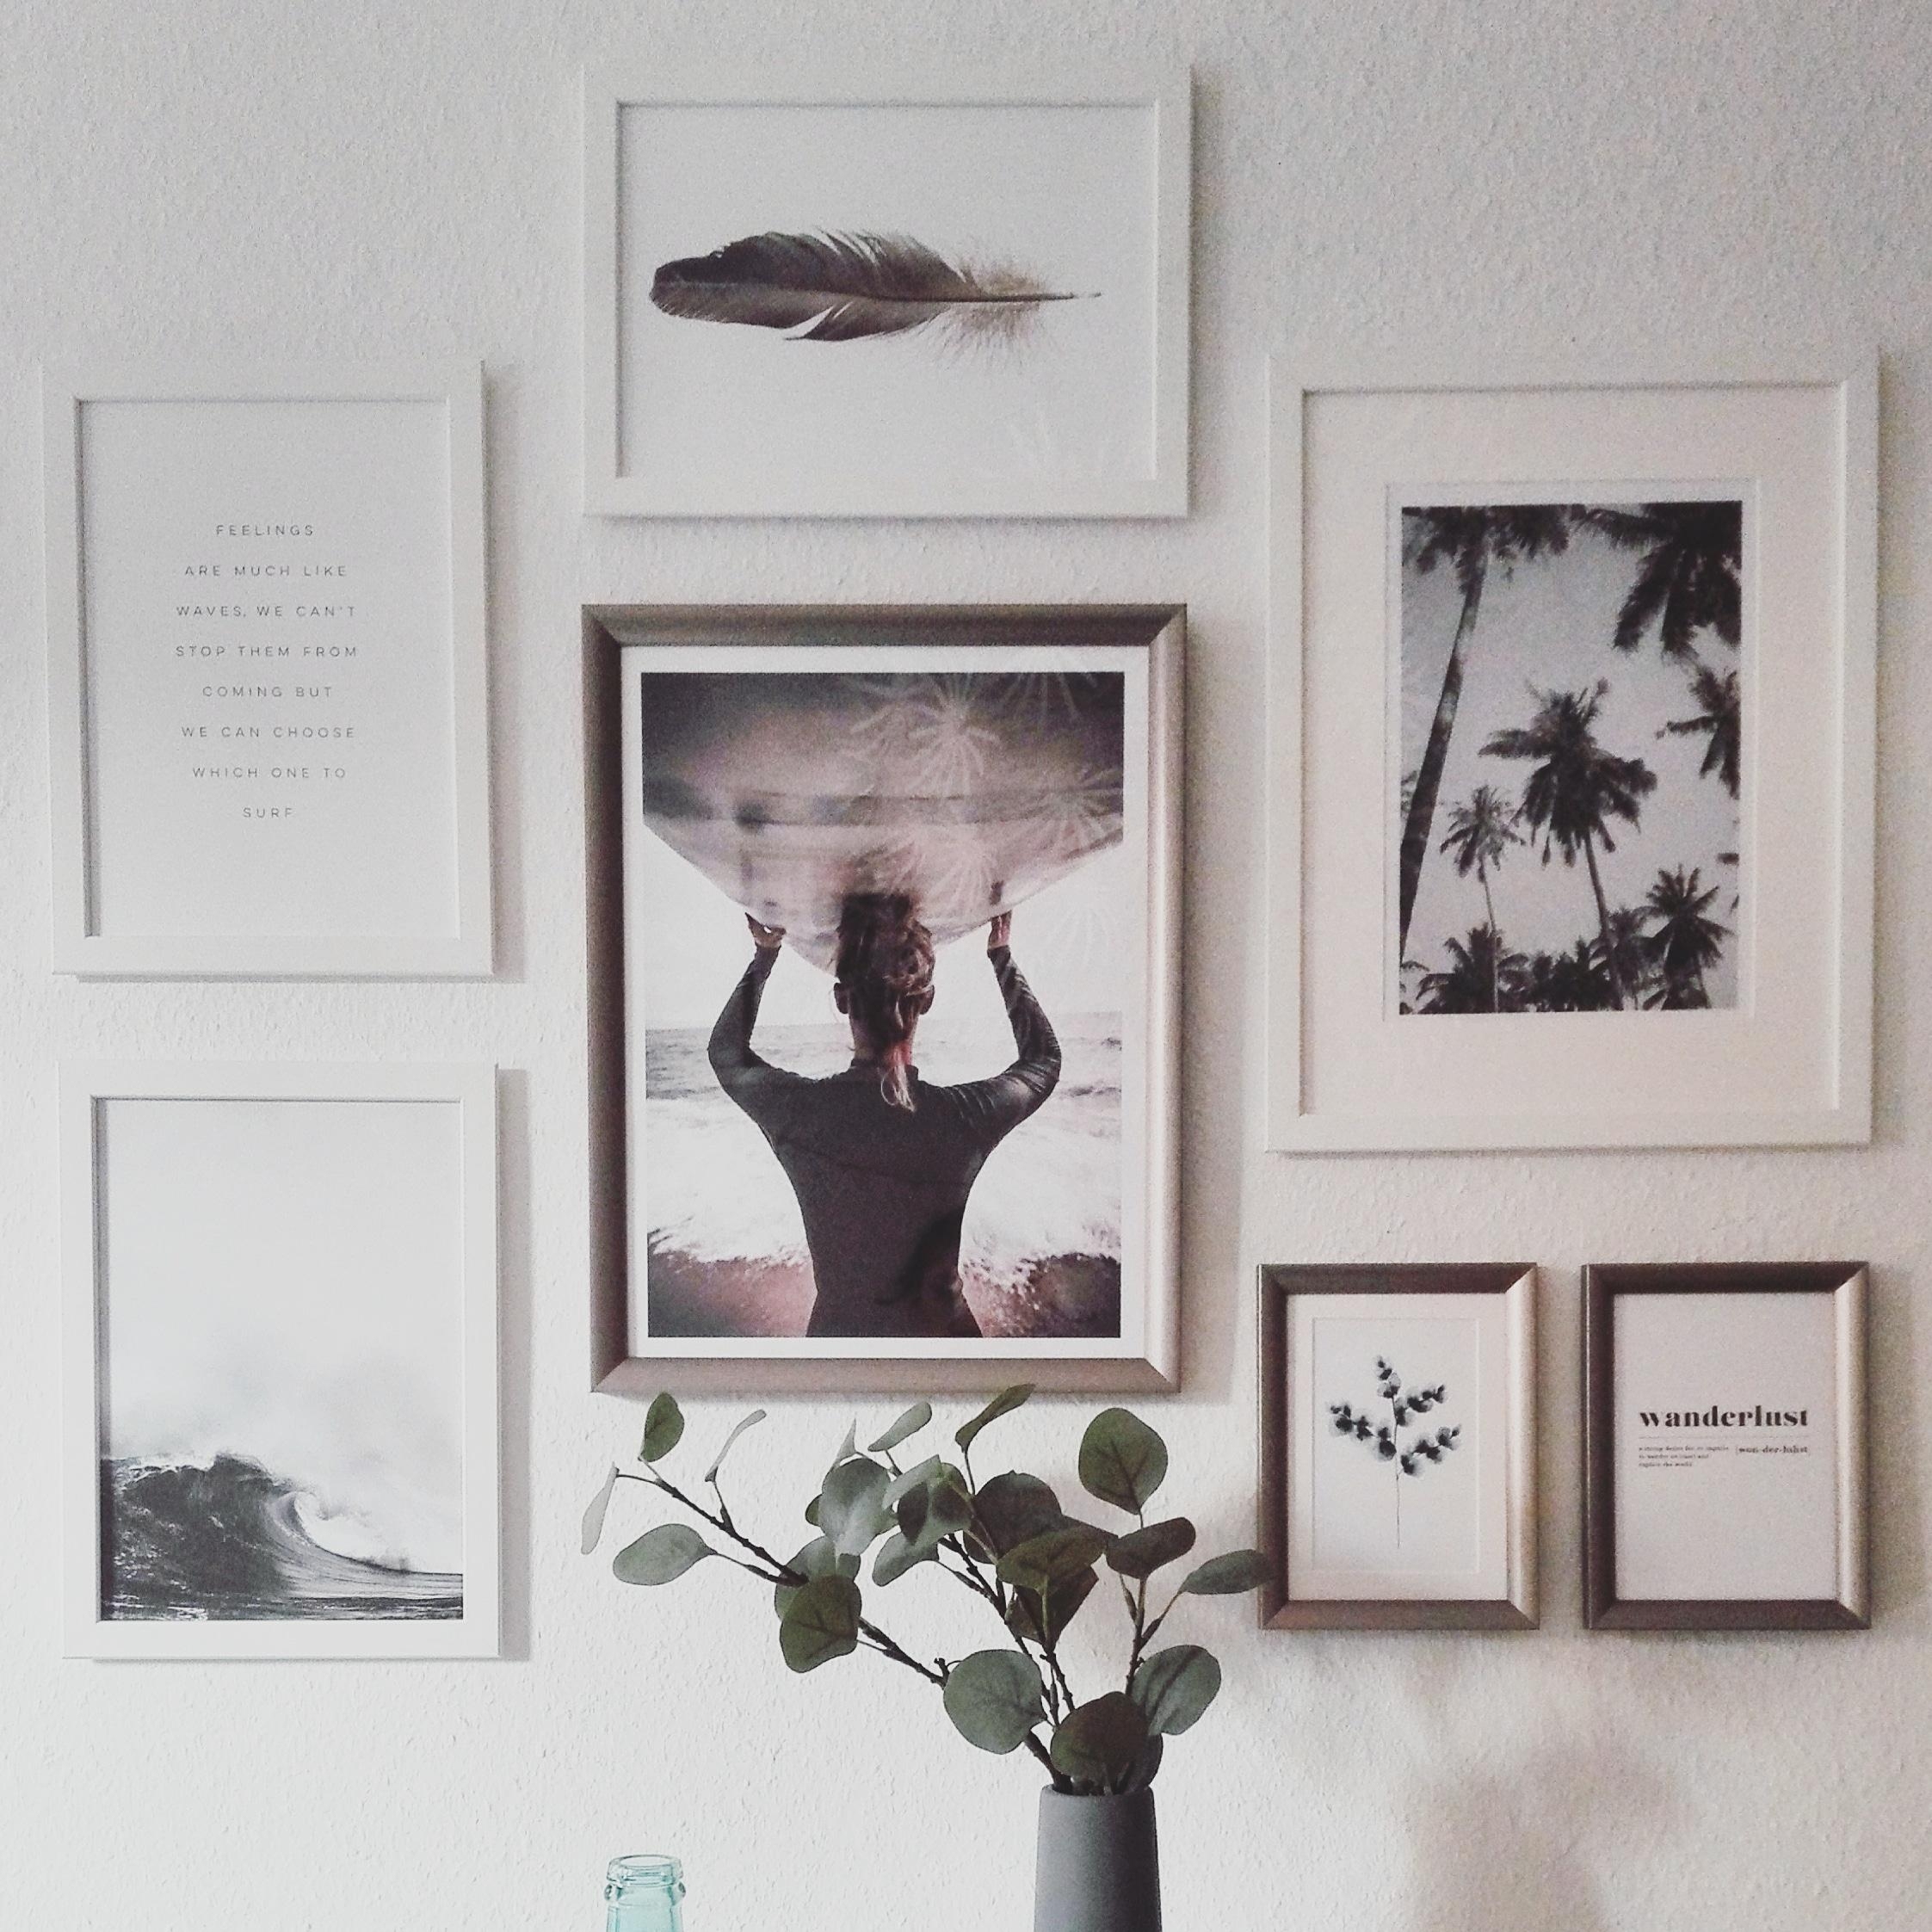 Urlaubsgefühl dank Palmen und Meer an der Wand #interior #bedroom #pictures